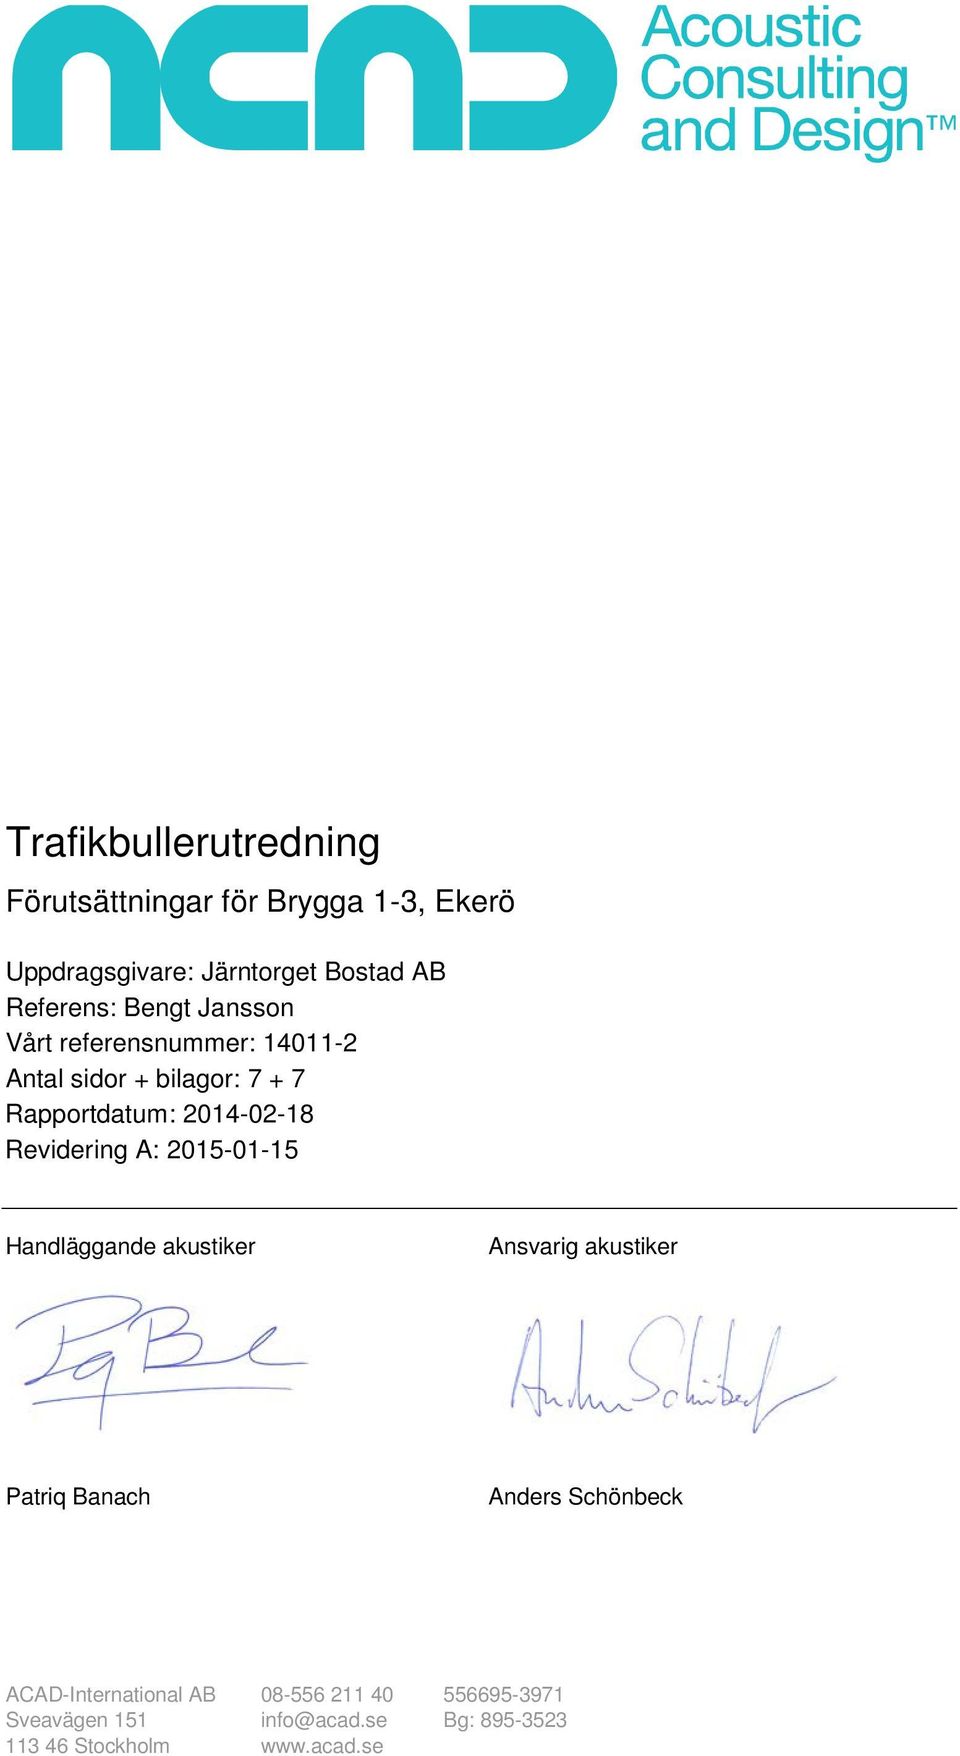 2014-02-18 Revidering A: 2015-01-15 Handläggande akustiker Ansvarig akustiker Patriq Banach Anders